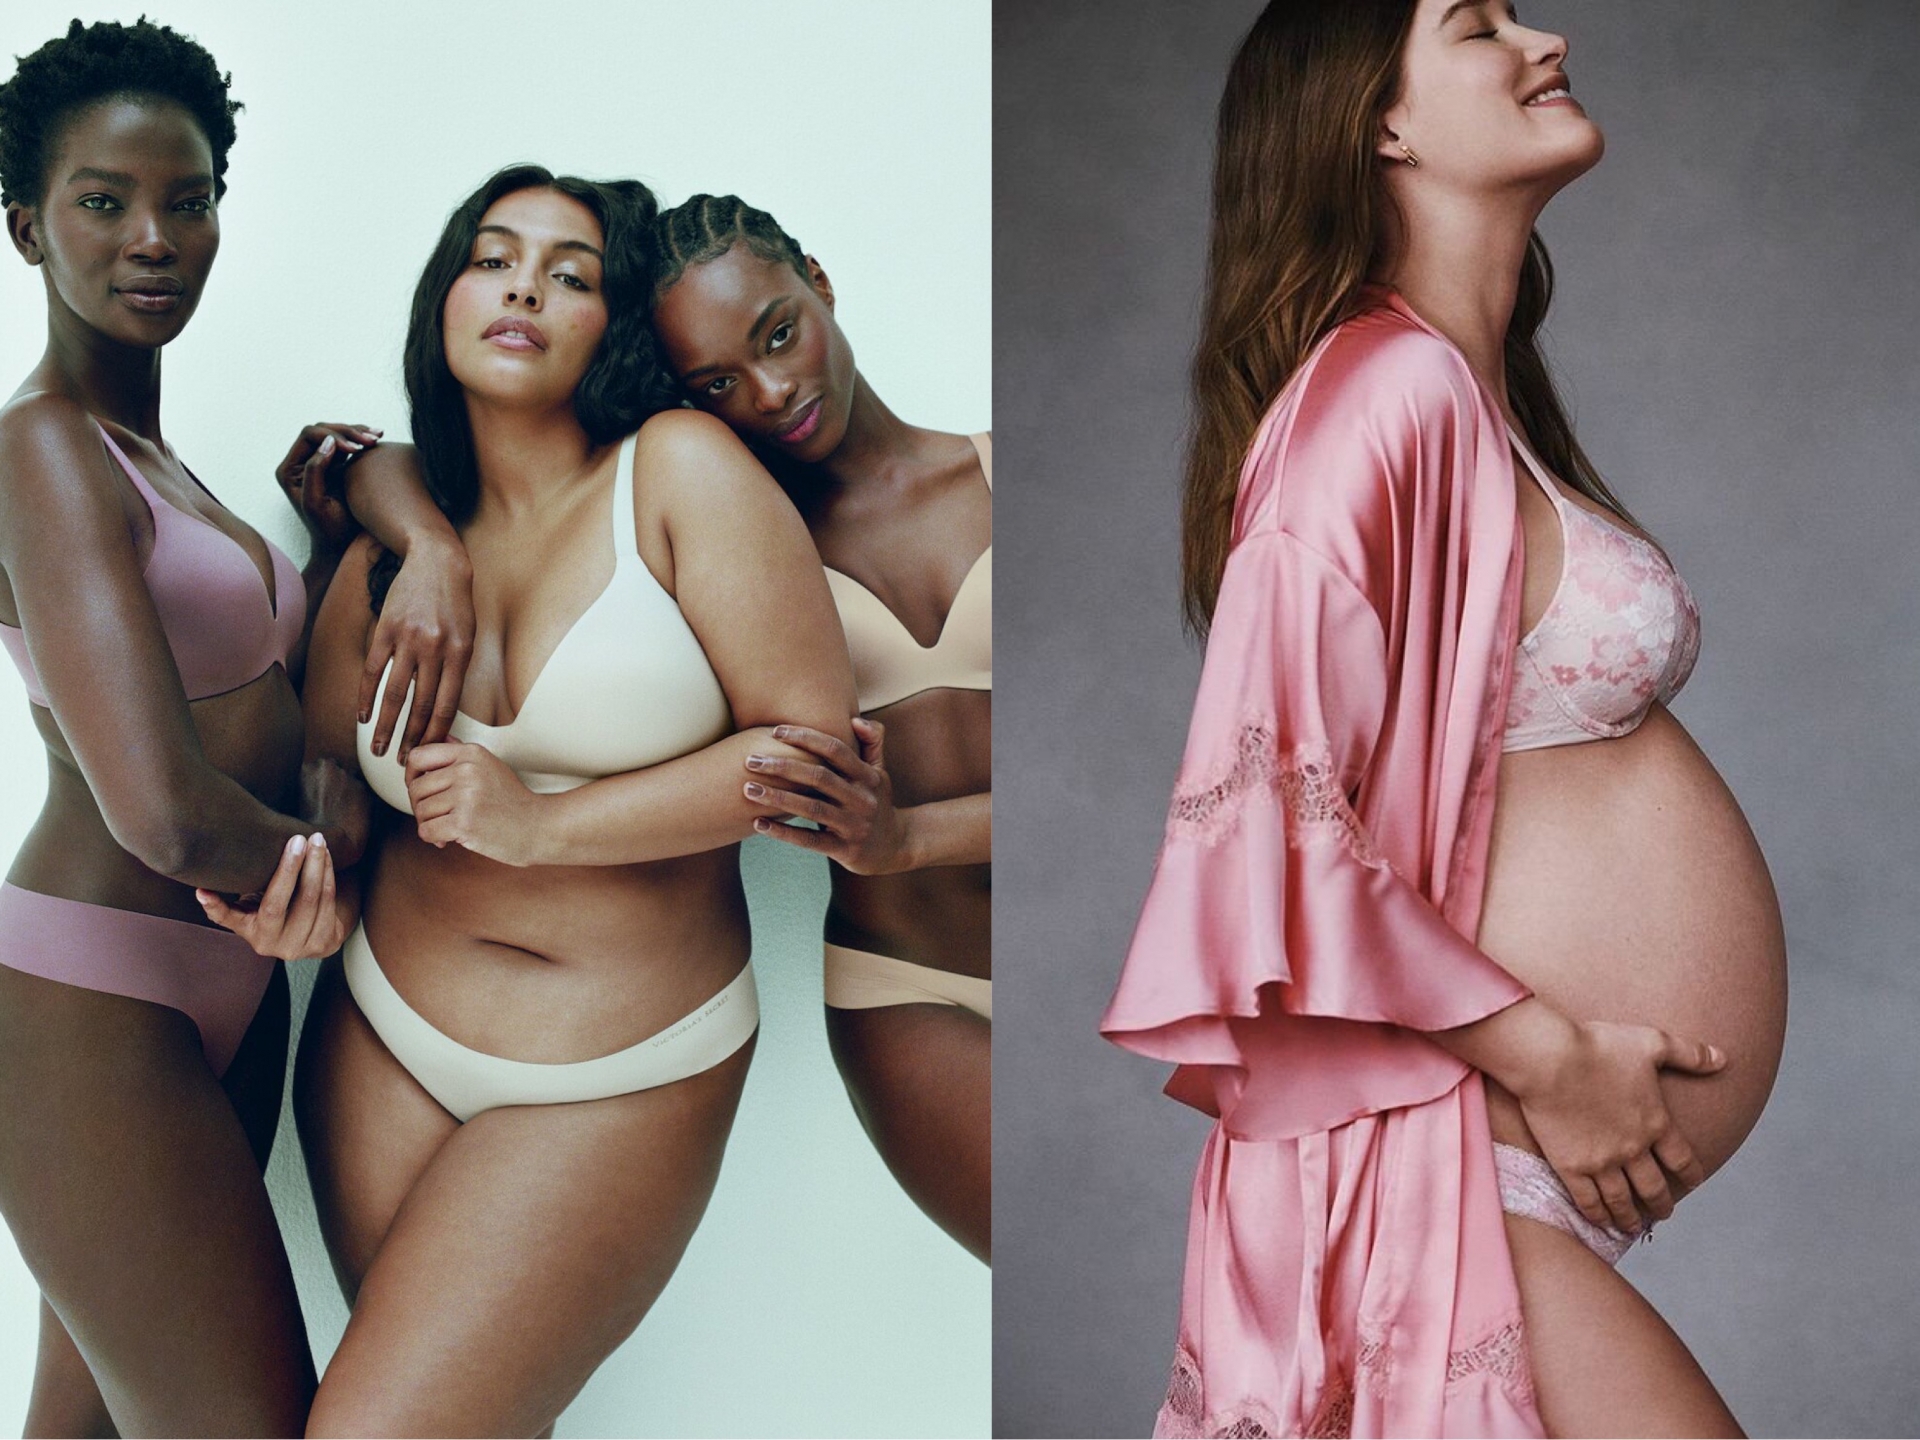 Sau khi tuyên bố sẽ 'thay máu' thương hiệu, Victoria's Secret đã tung ra những bộ ảnh quảng bá mới hướng tới mục tiêu tôn vinh mọi vẻ đẹp của phụ nữ.